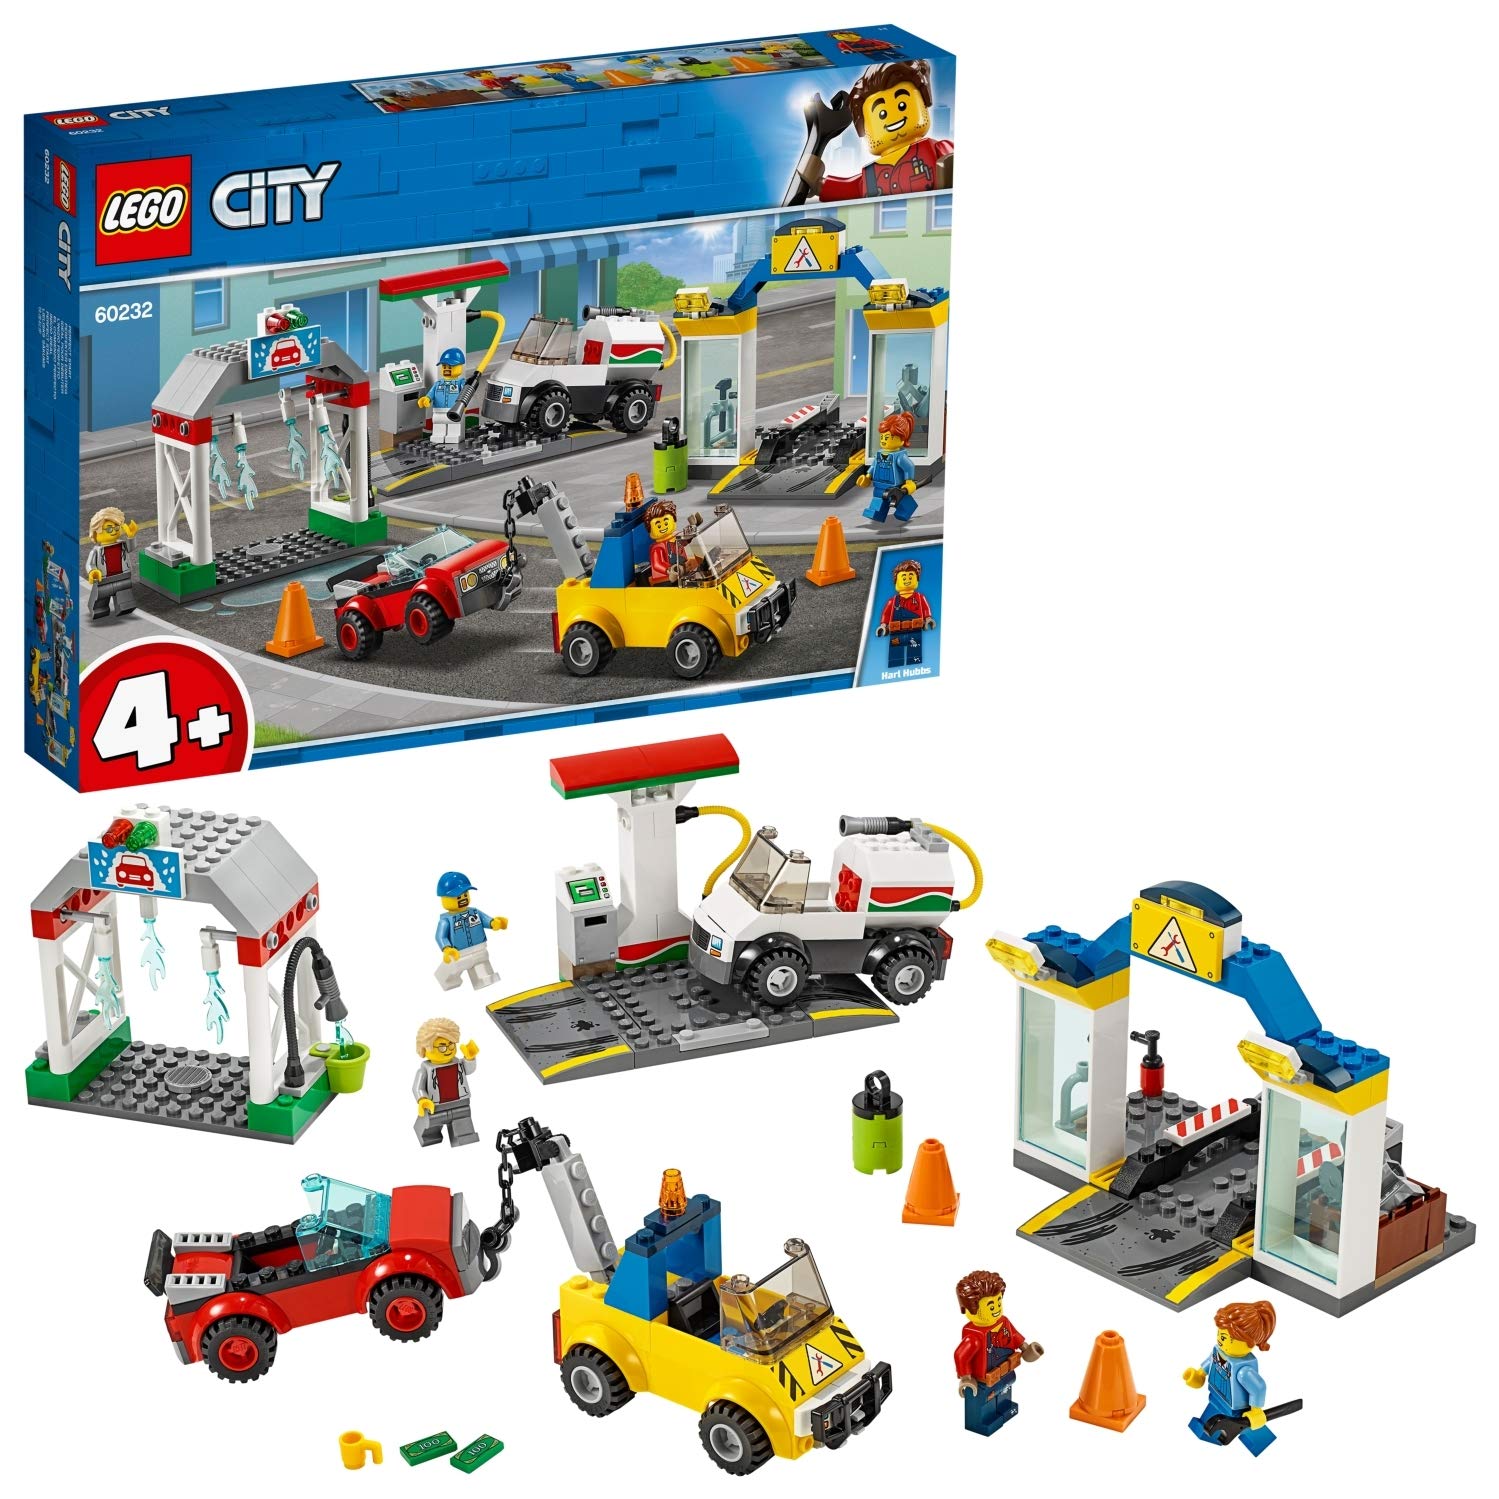 Lego City 60232 Large Workshop